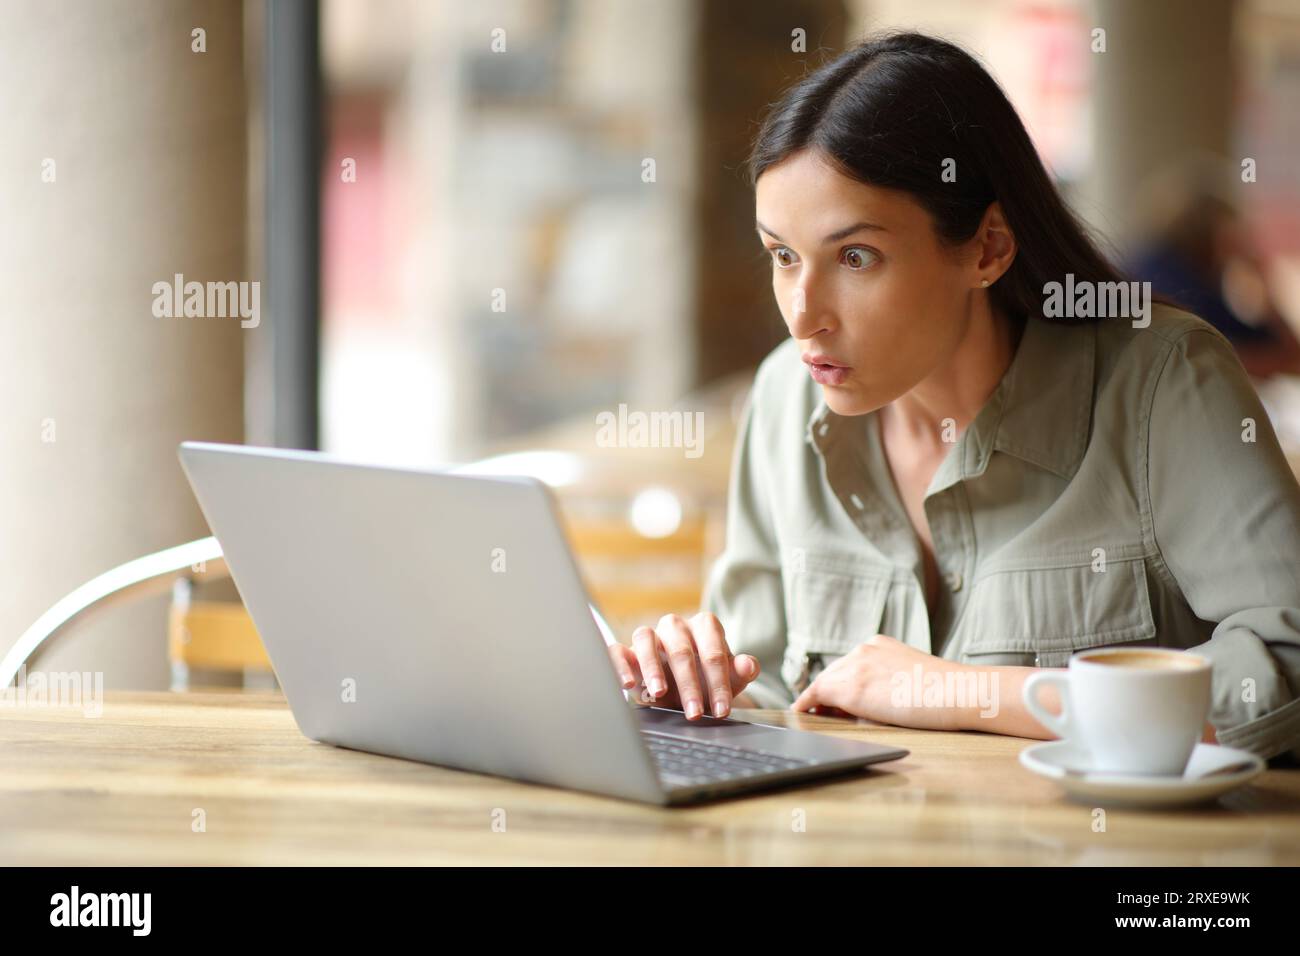 Una donna stupita che guarda contenuti sorprendenti su un notebook nella terrazza di un ristorante Foto Stock